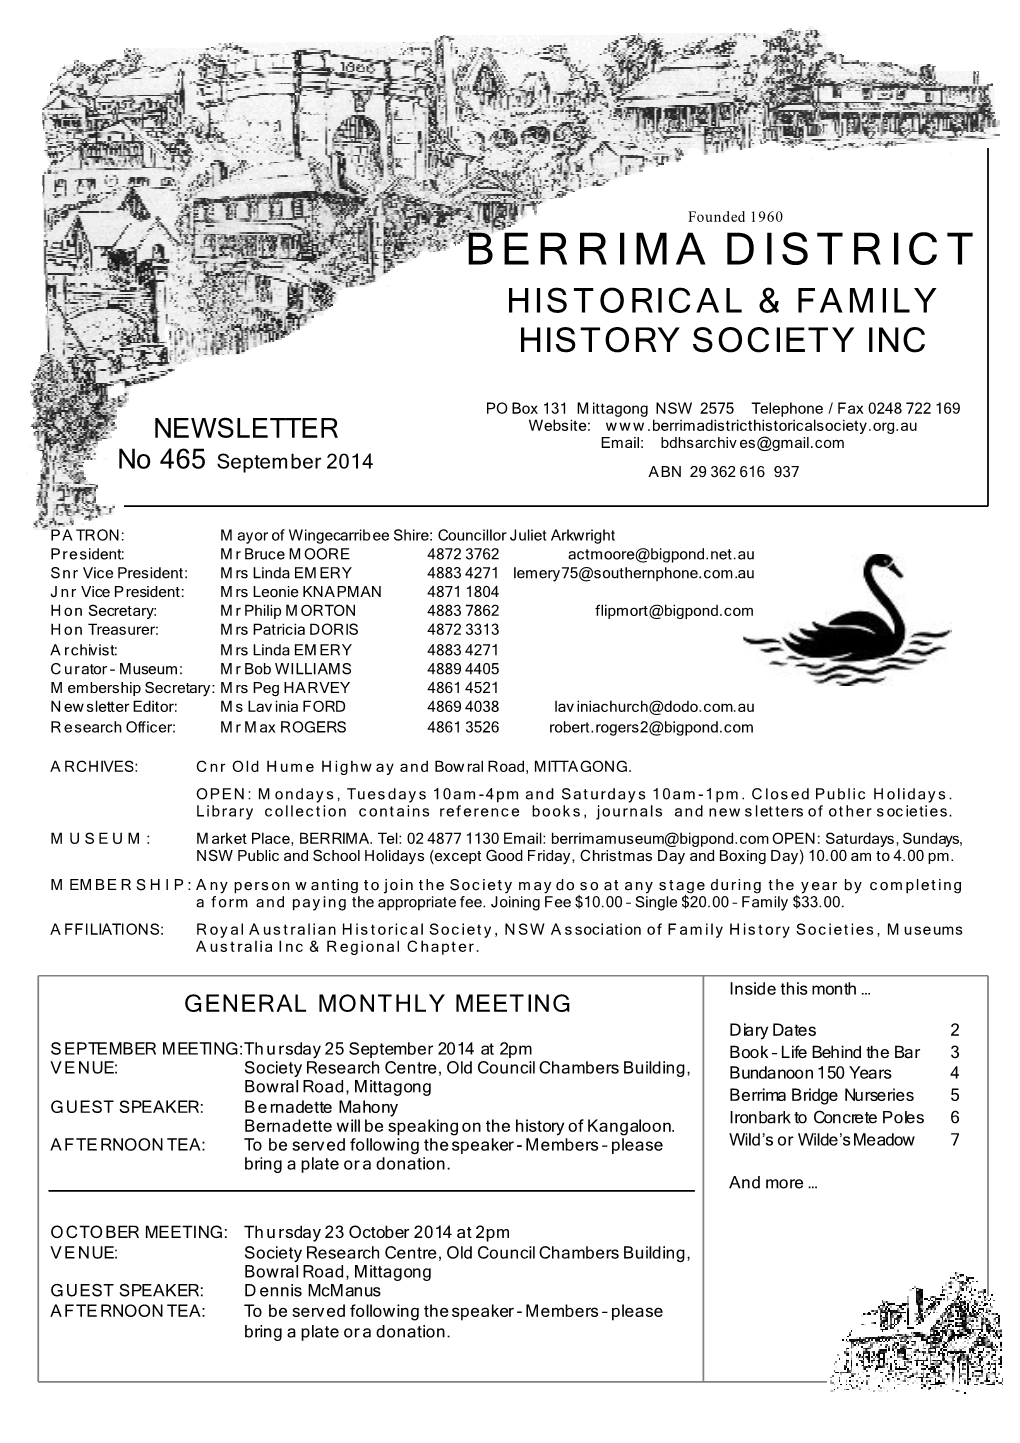 Bernadette Mahoney: Sept Spring Walking Tour of Mittagong Speaker Wednesday 15 October 2014